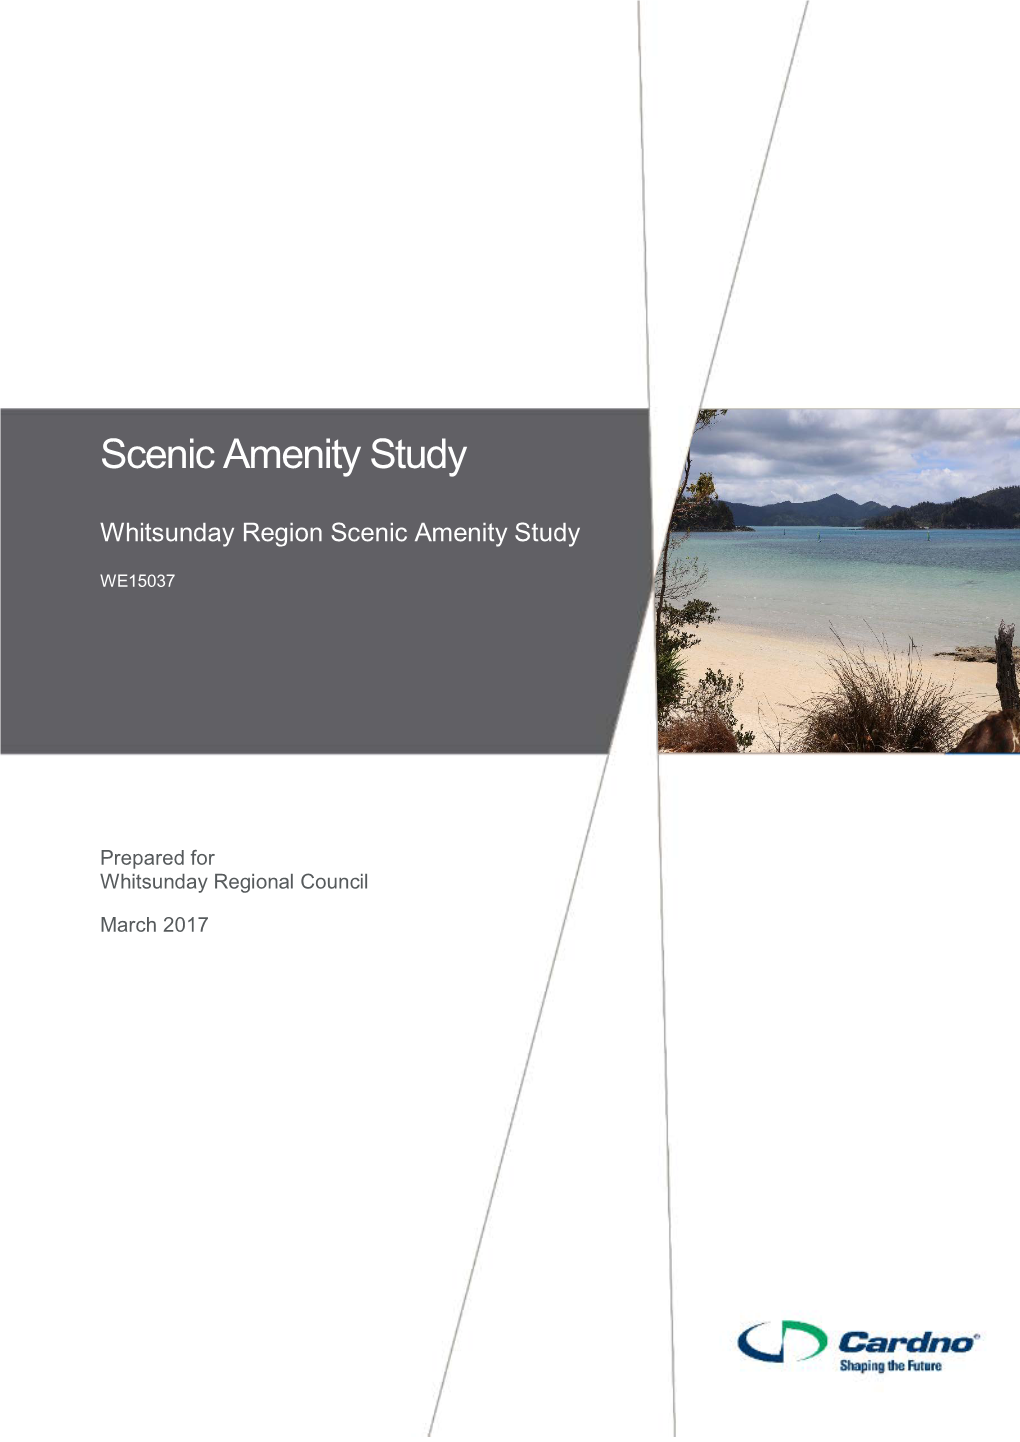 Whitsunday Scenic Amenity Study